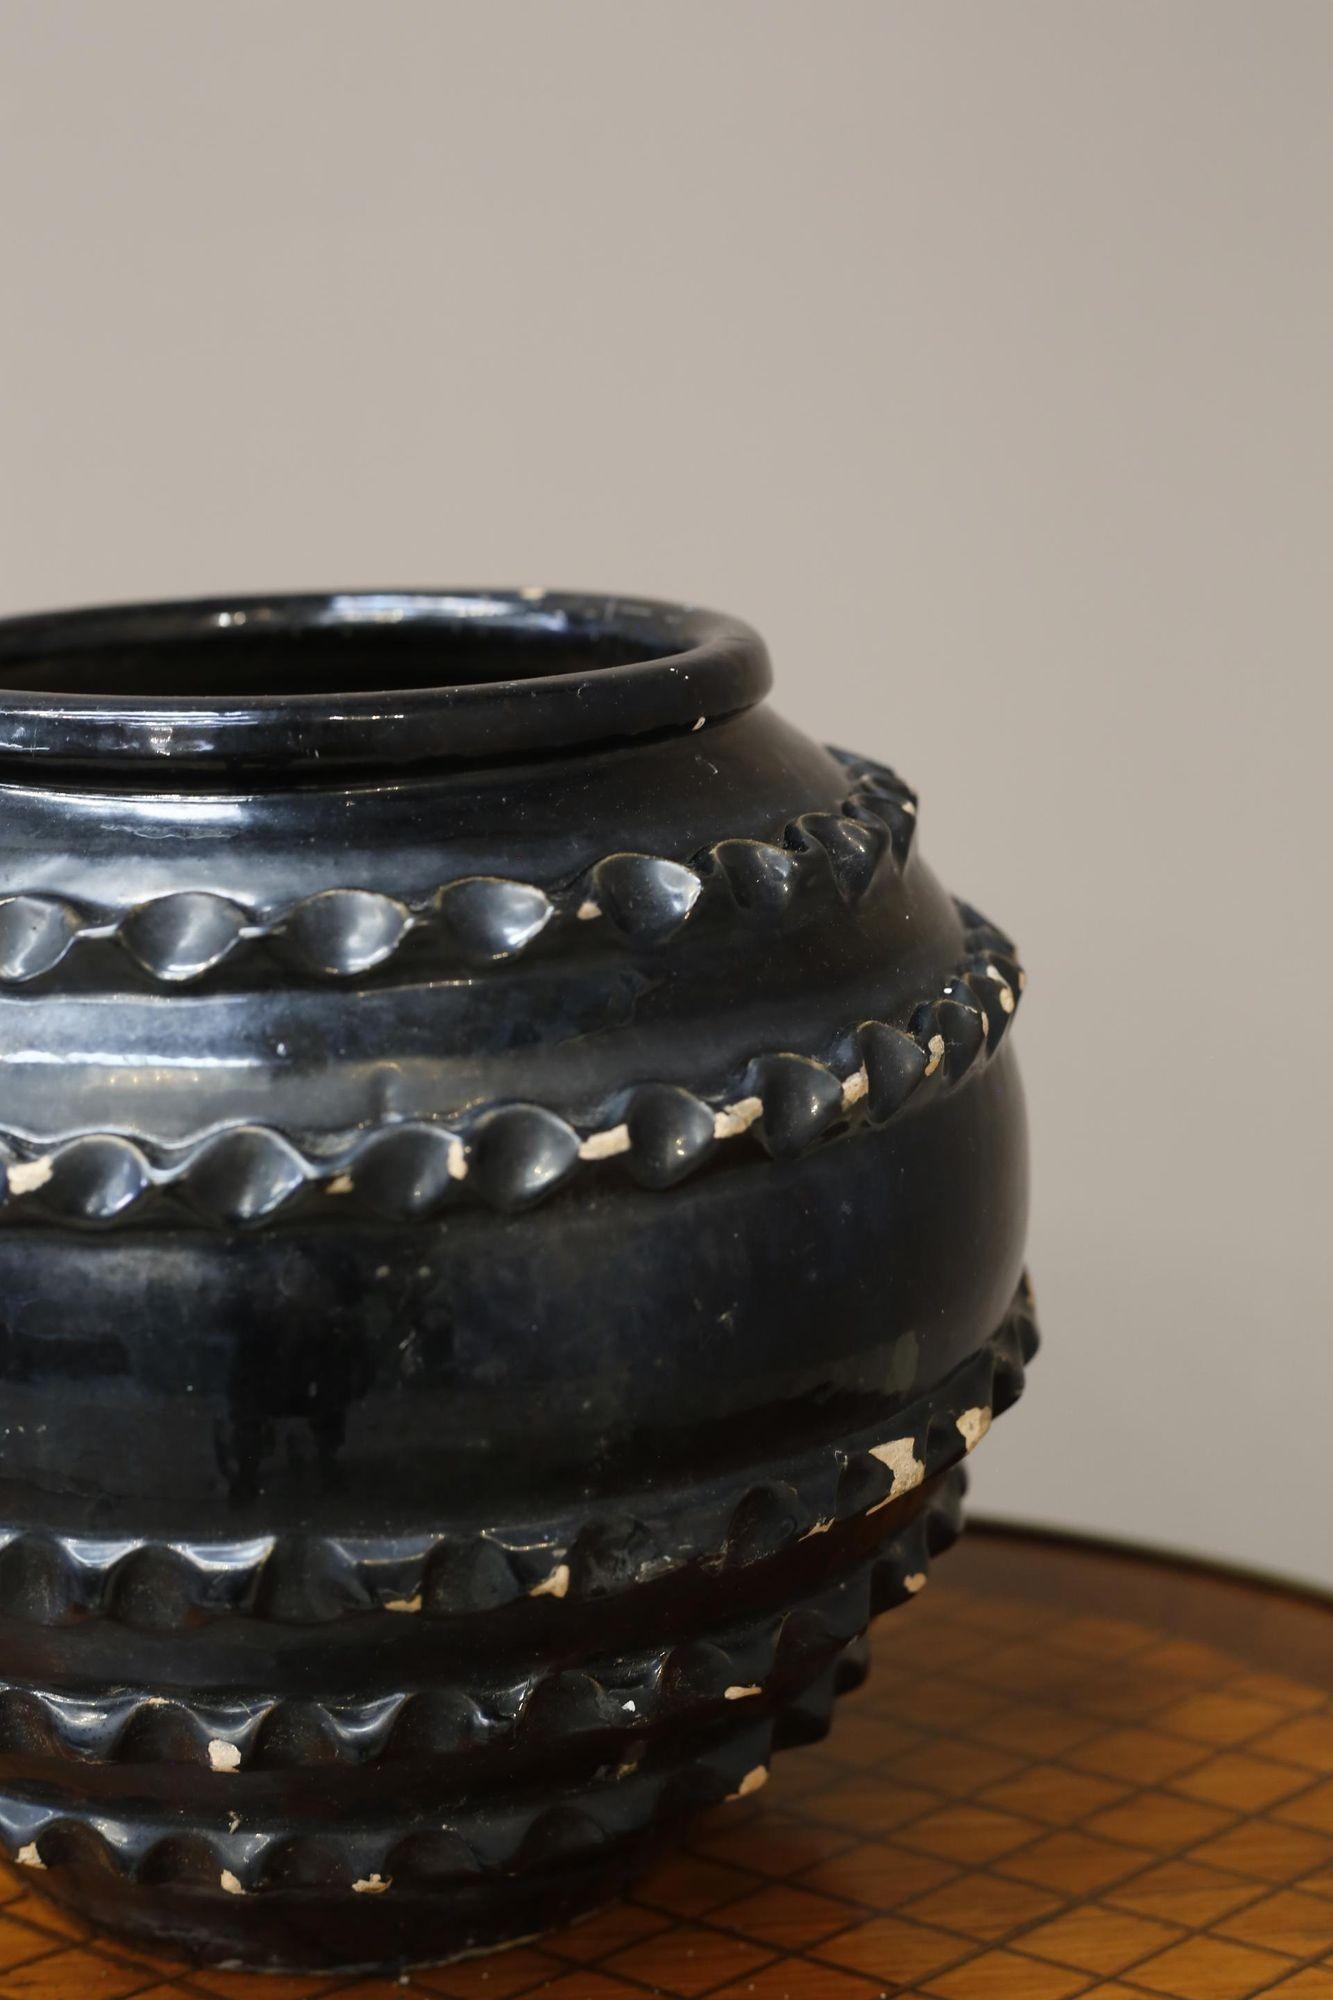 Il s'agit d'un très beau pot à glaçure noire de Biot datant du 20e siècle.
Il est en très bon état, avec une légère usure de la glaçure.
Pas d'éclats ni de fissures.
La texture et les détails sont superbes.